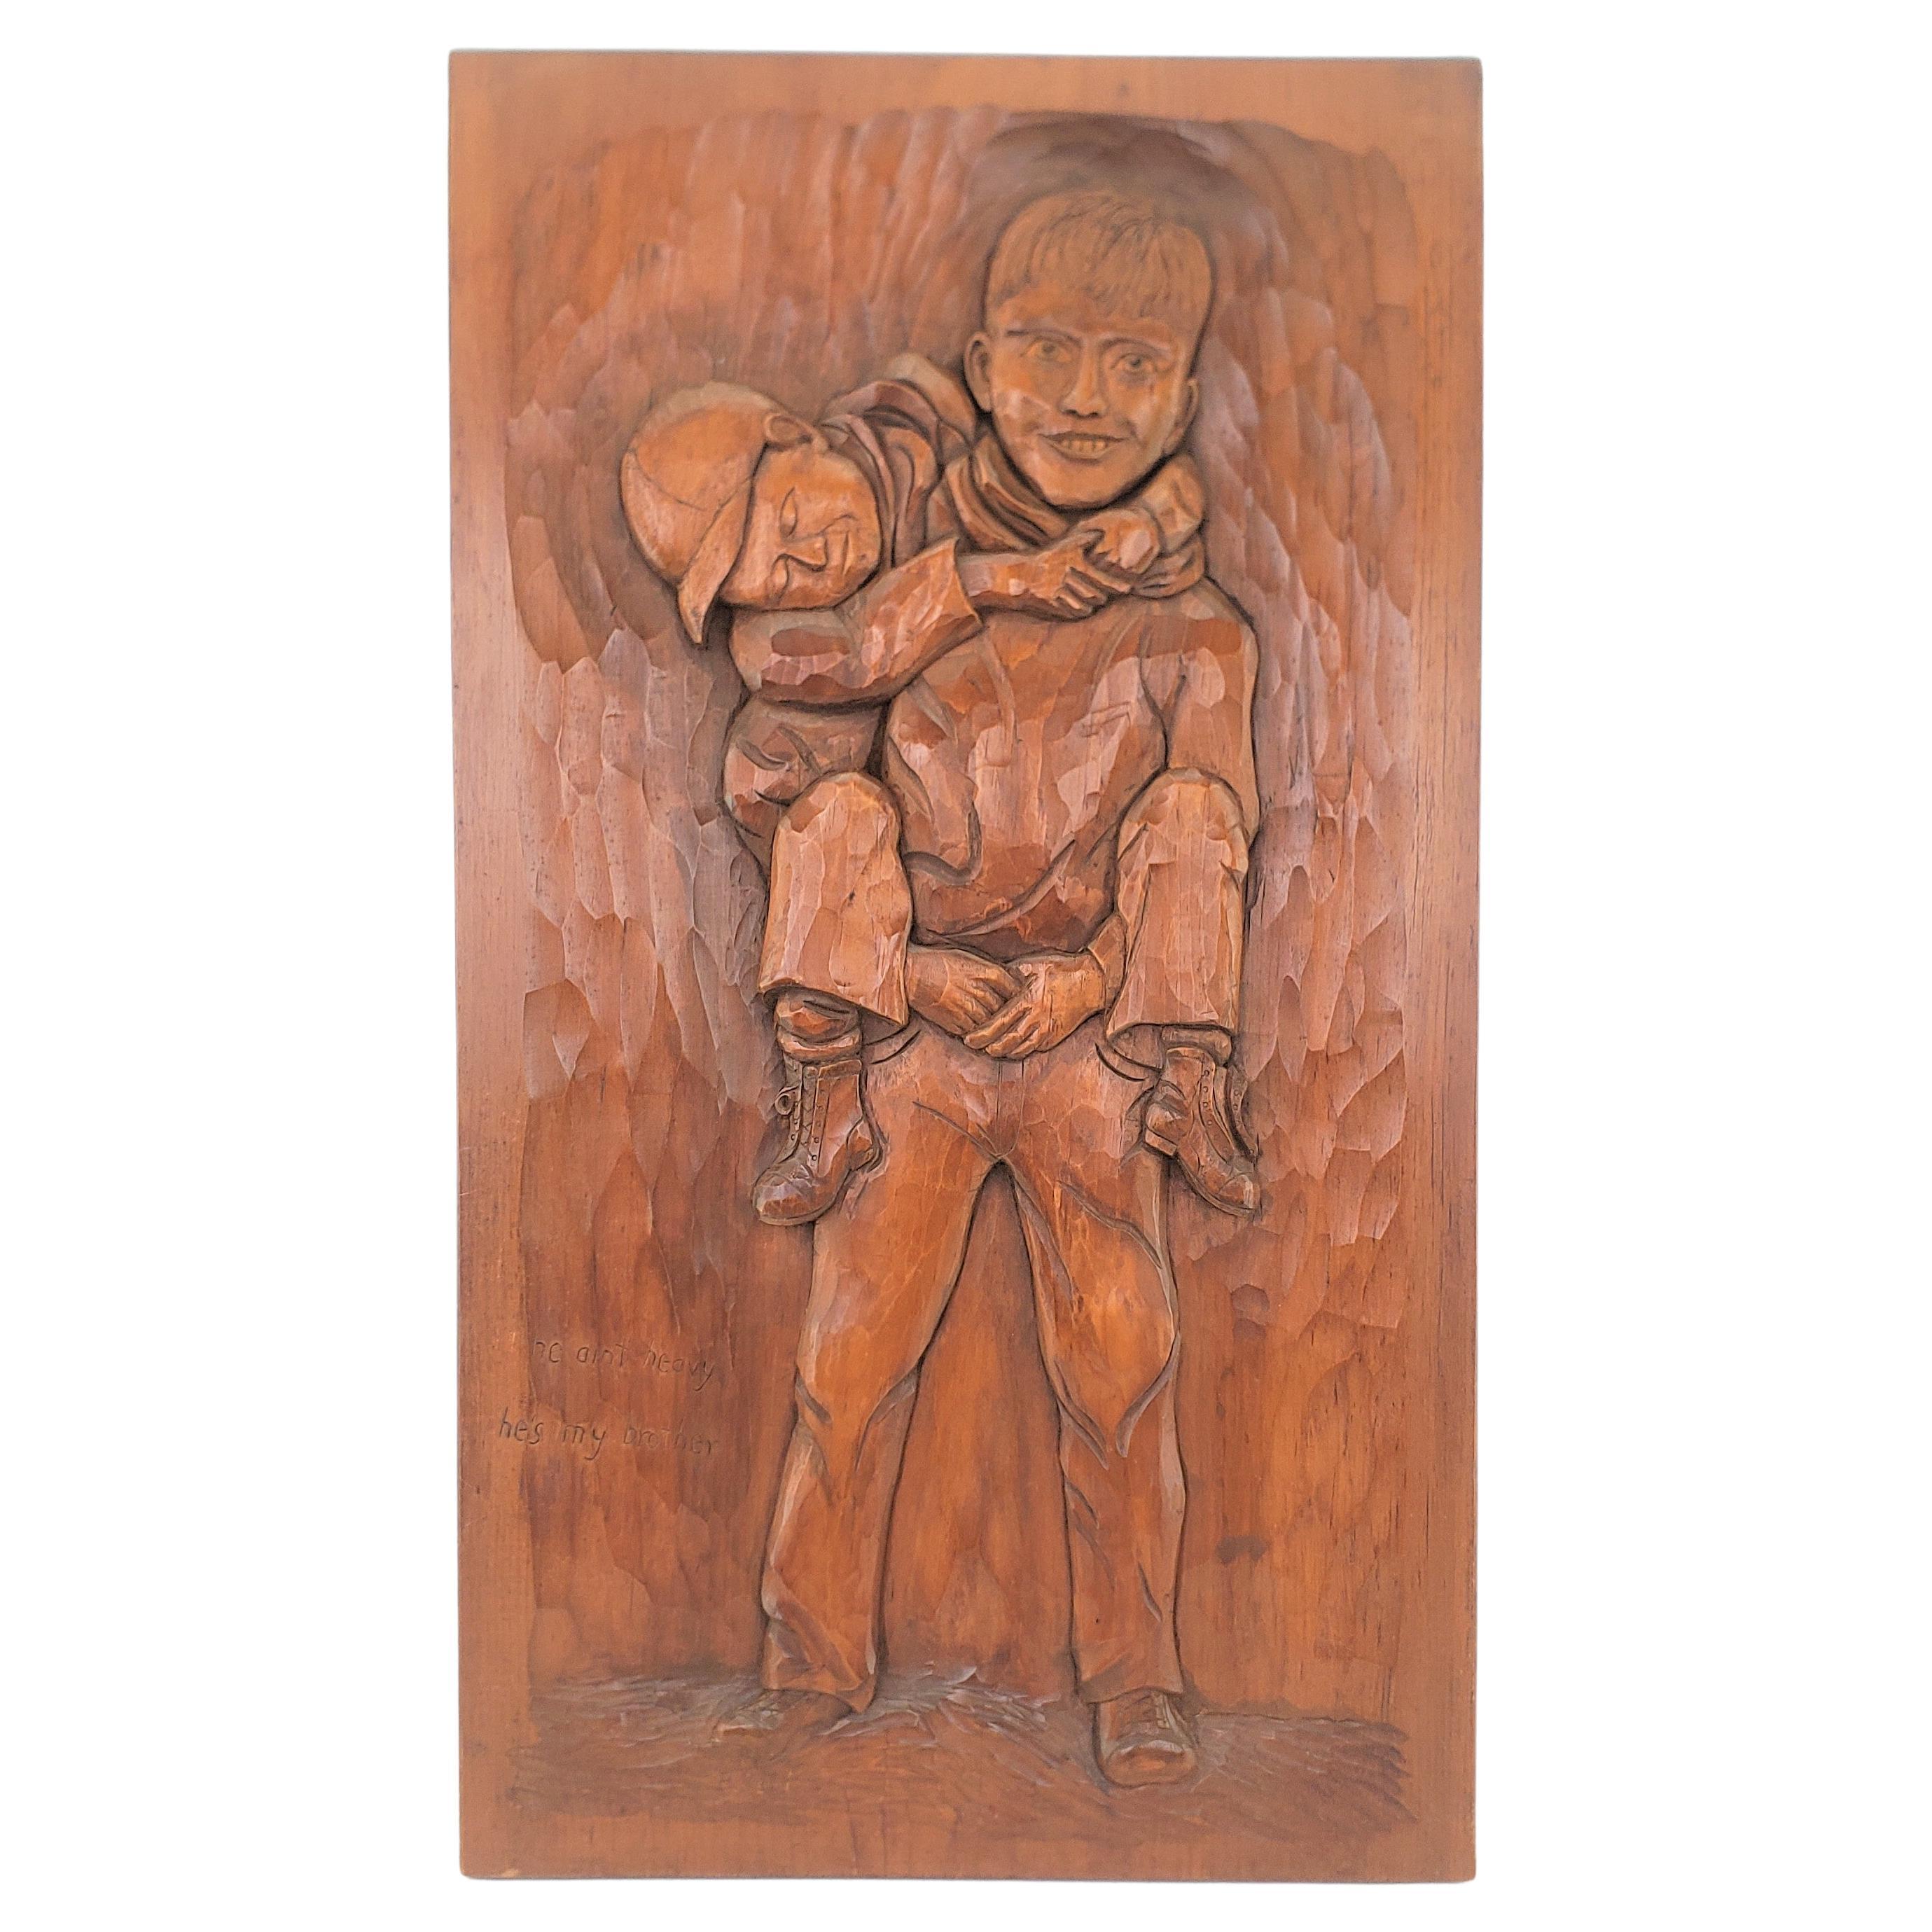 Folk Art Carved Panel von zwei Brüdern mit dem Titel: "An He Ain't Heavy, He's My Brother".